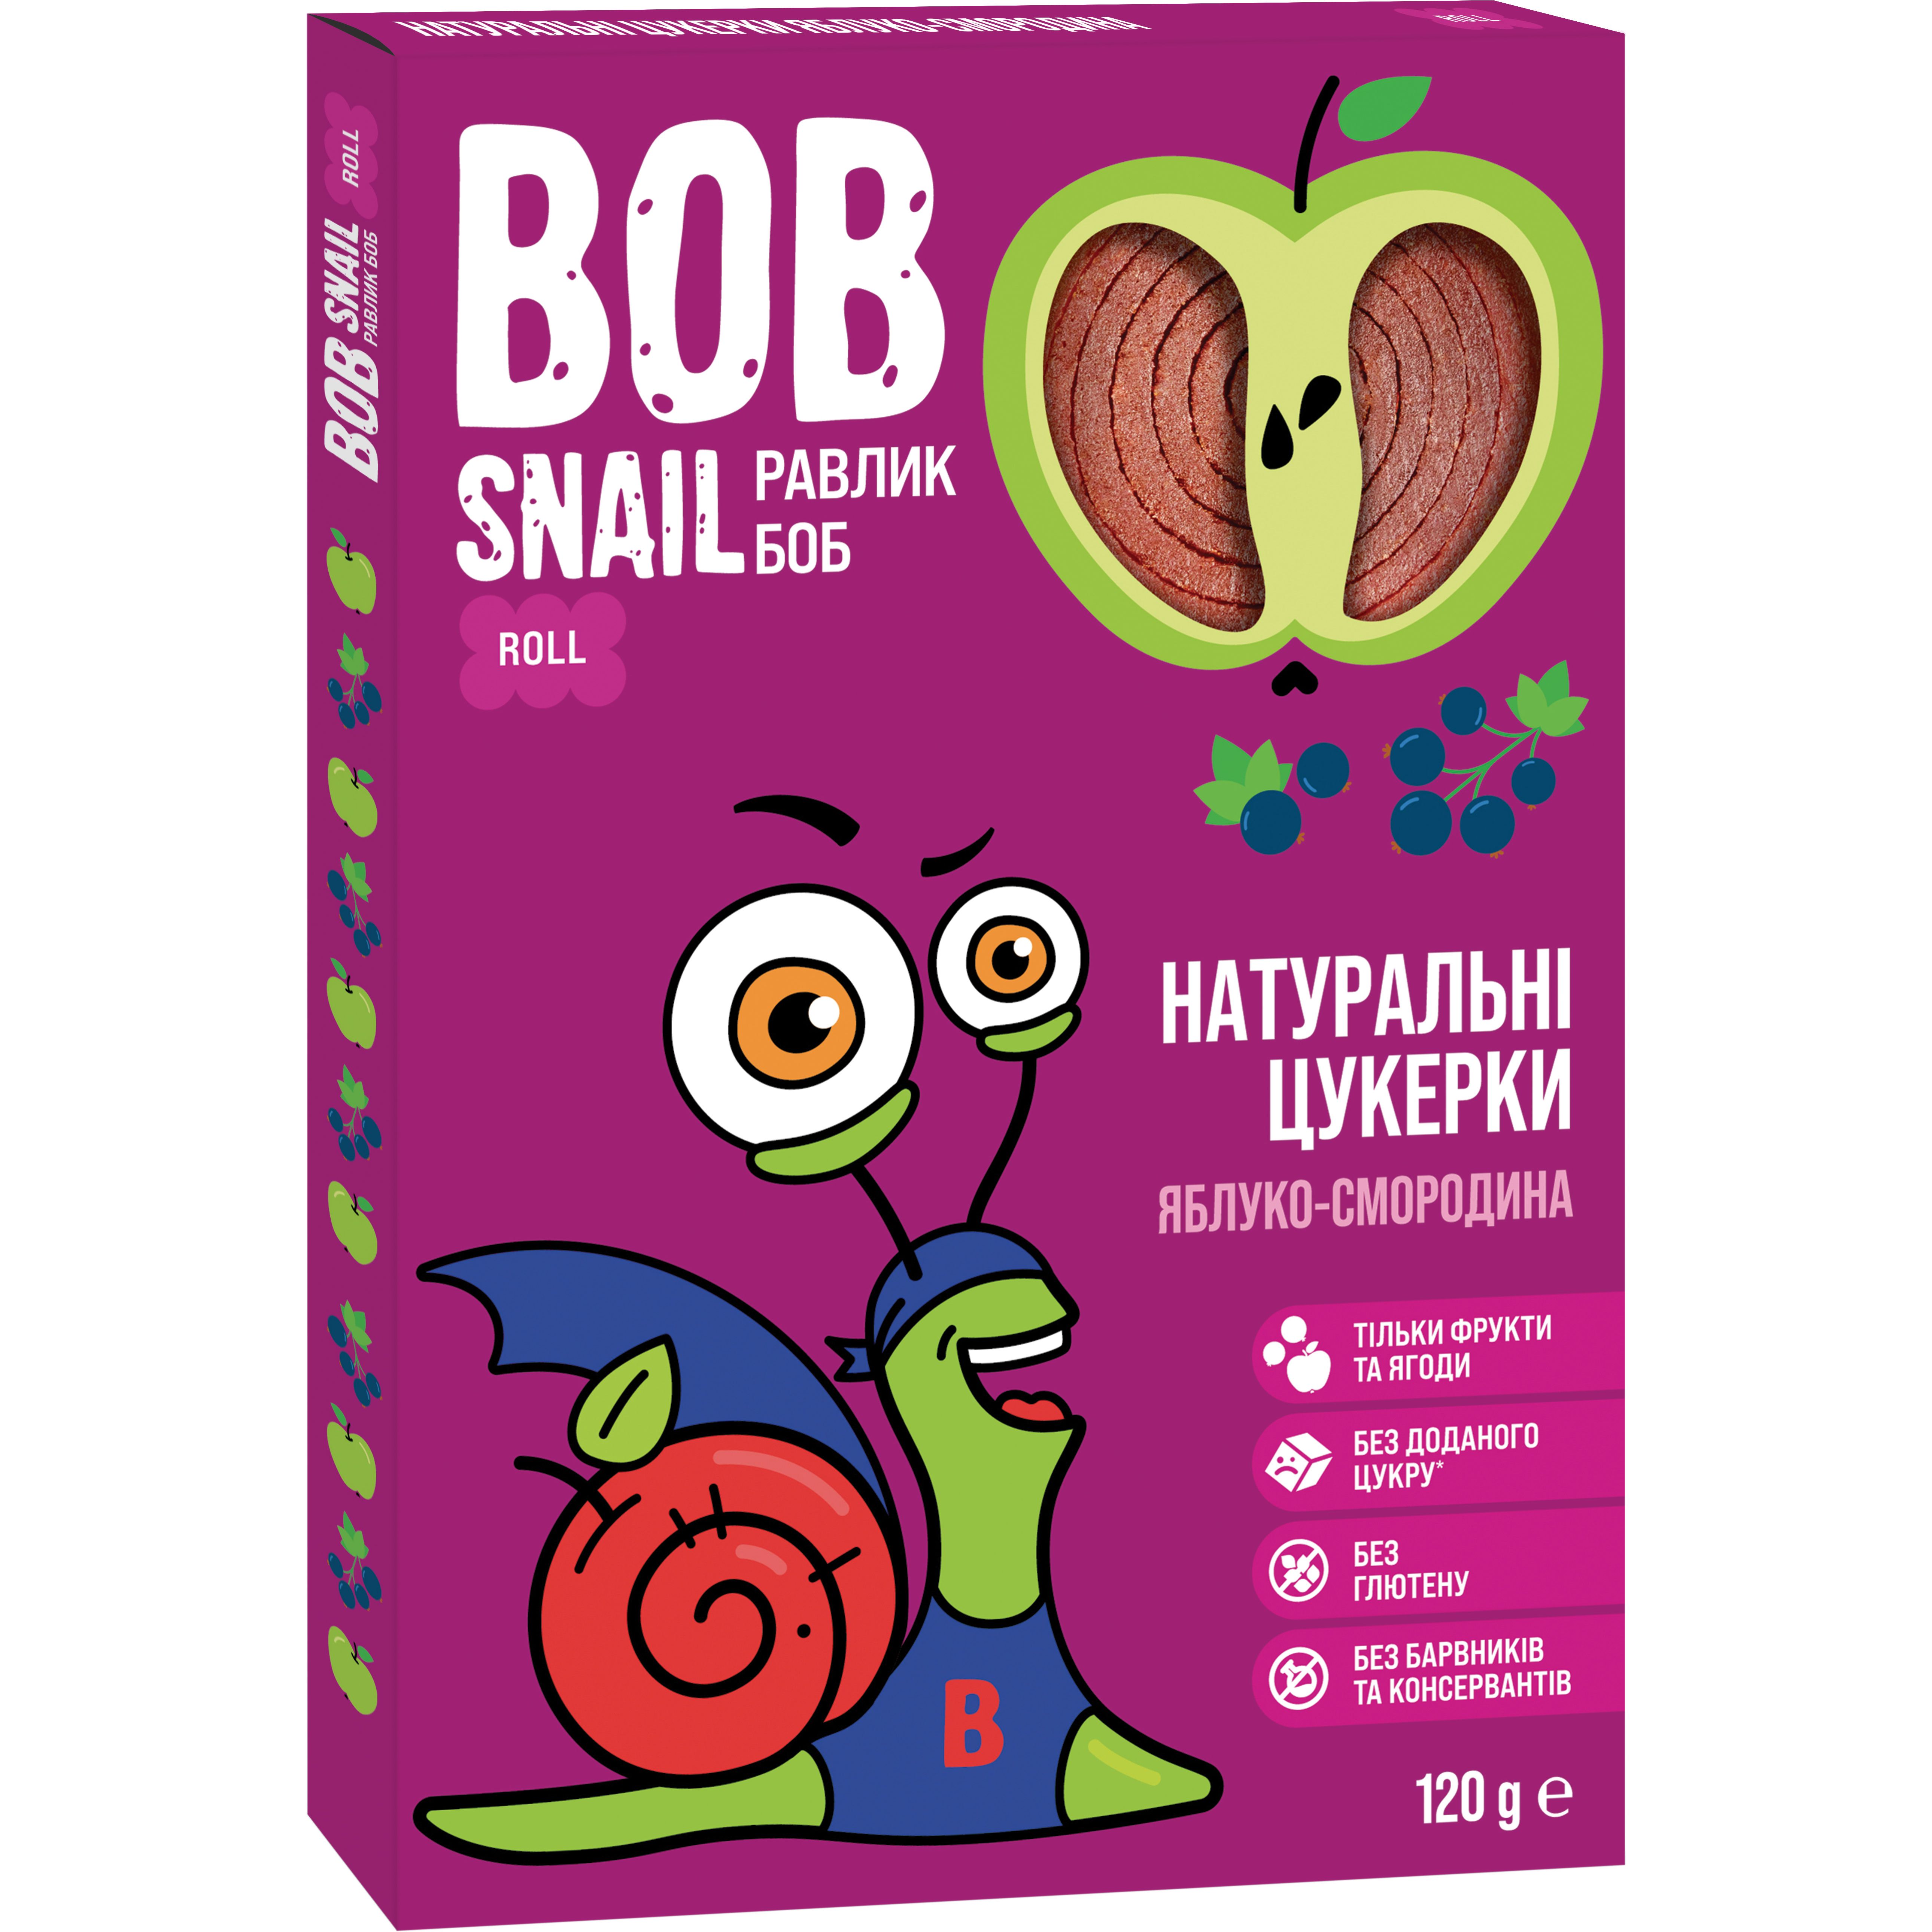 Фруктовые яблочно-черносмородиновые конфеты Bob Snail 120 г - фото 1